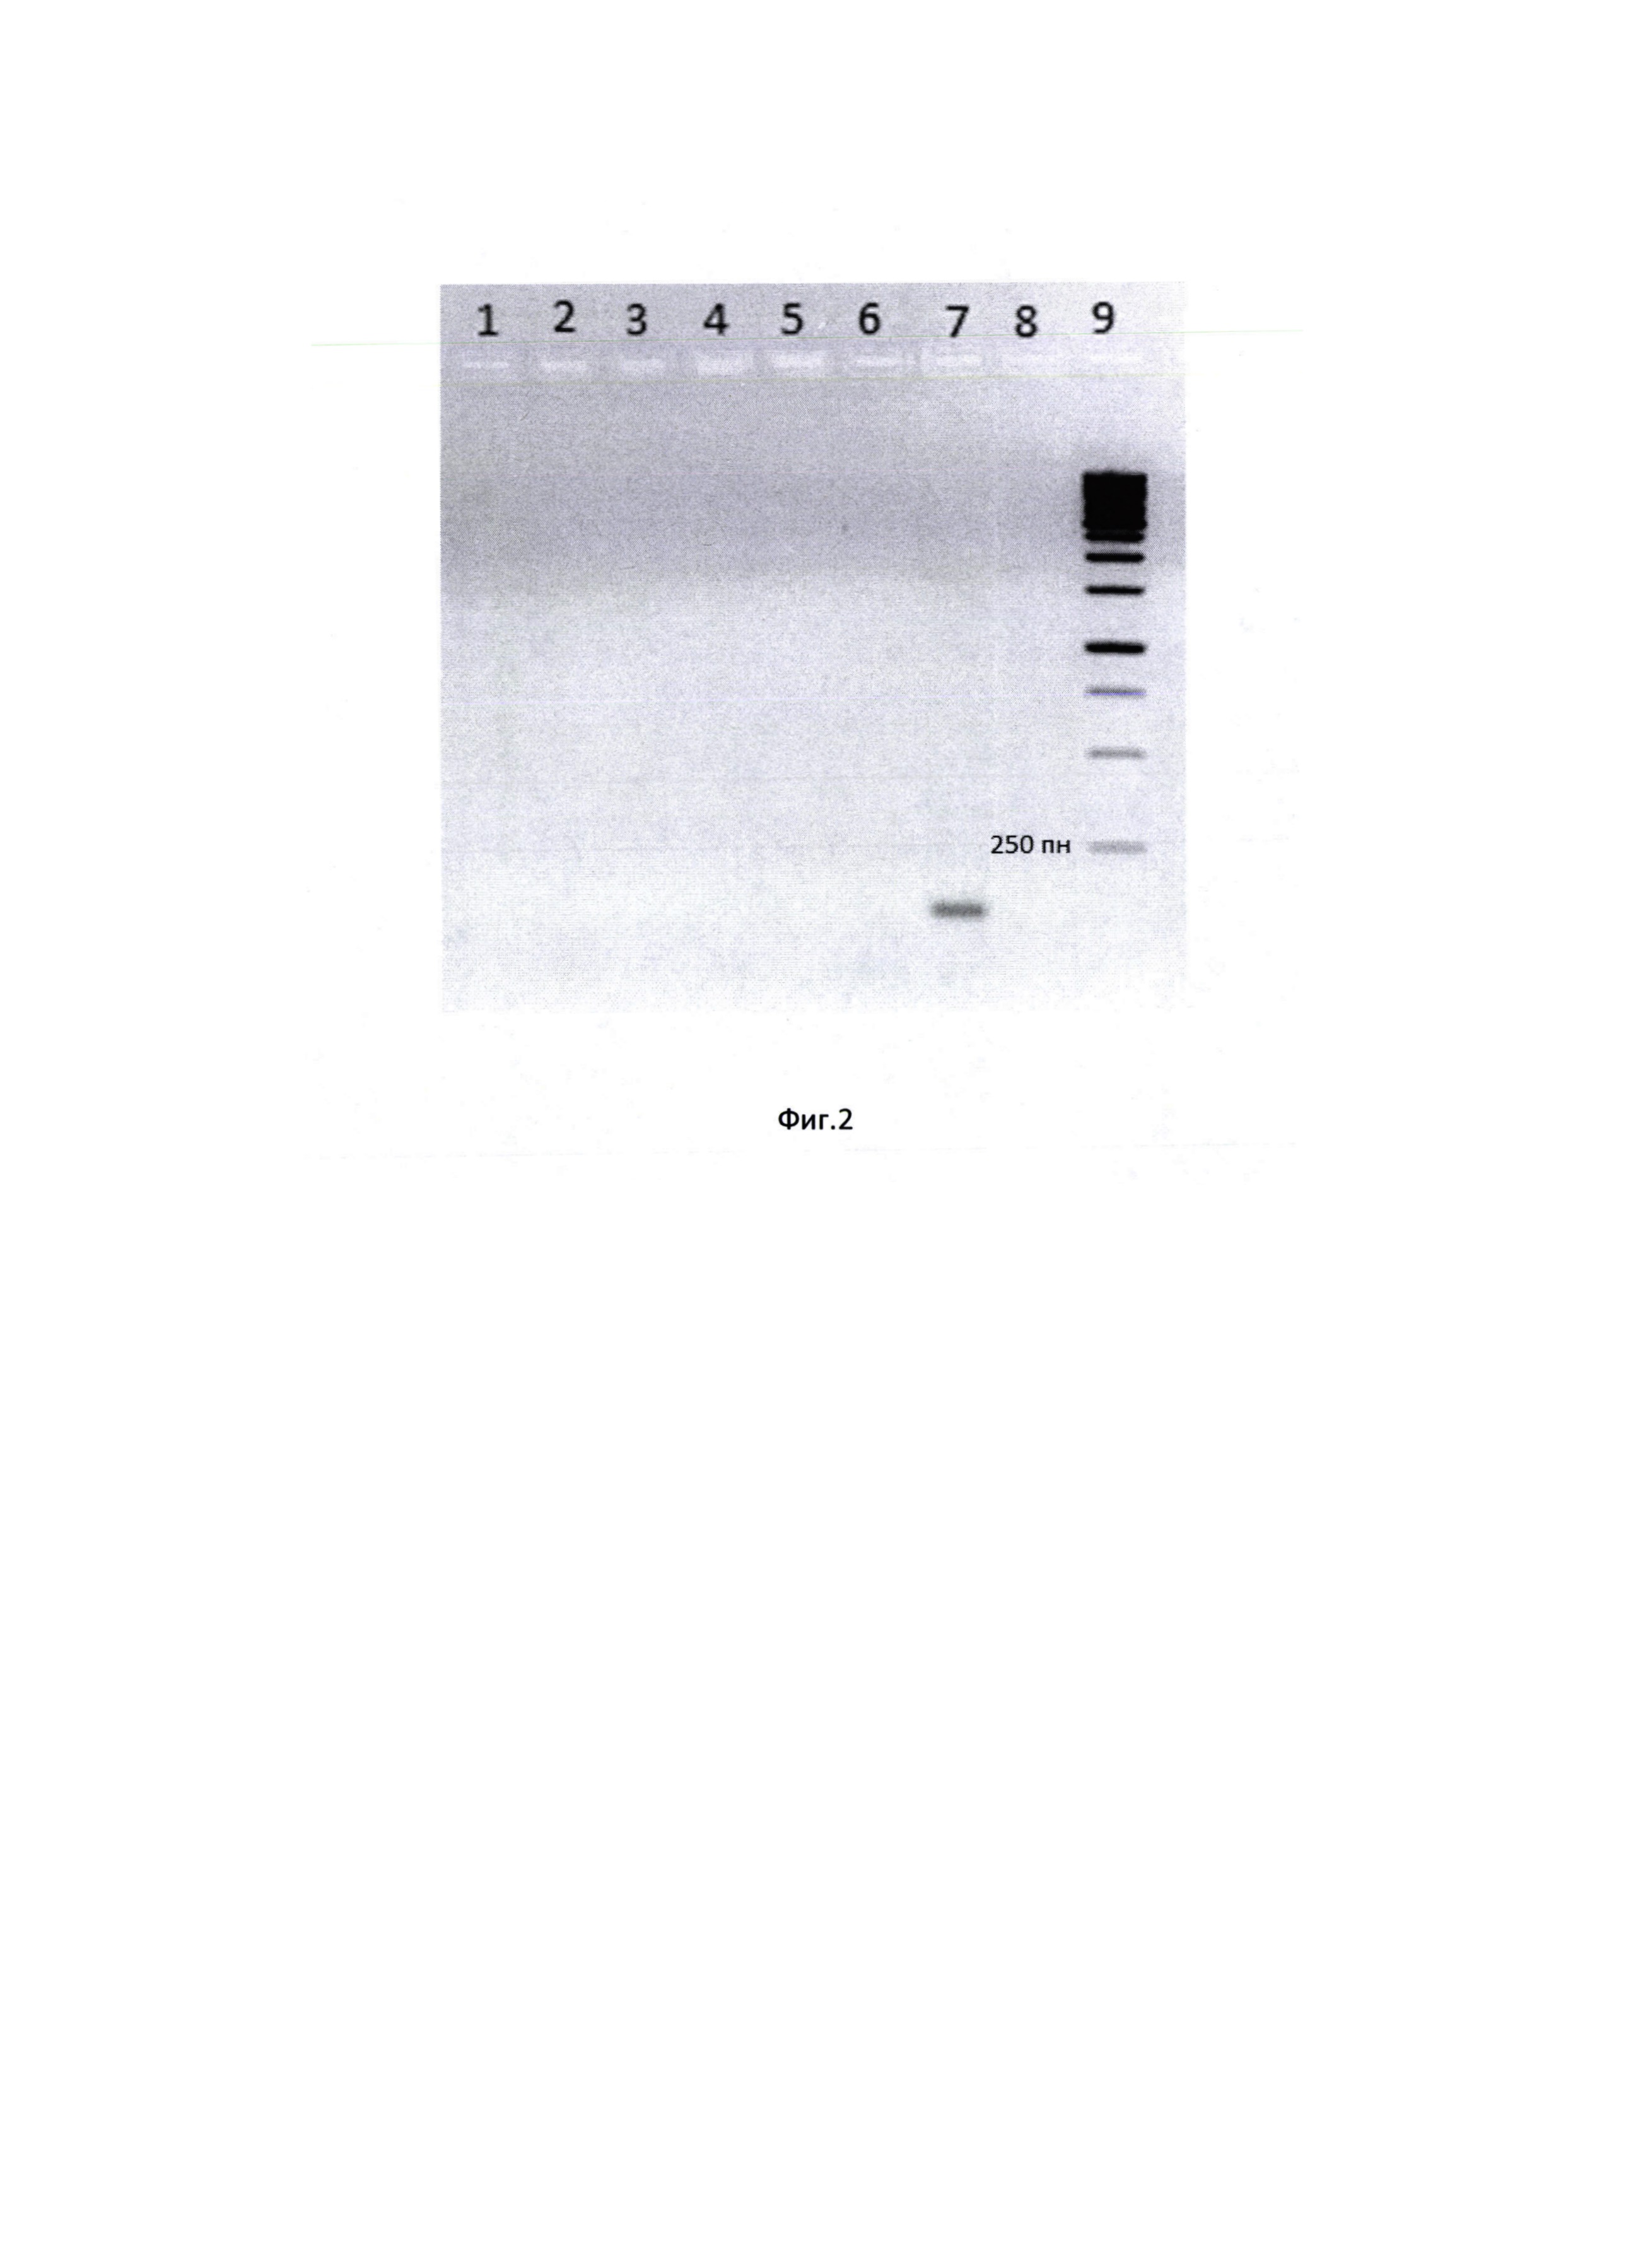 Способ выявления кДНК коронавируса SARS-CoV-2 с помощью синтетических олигонуклеотидных праймеров в полимеразной цепной реакции